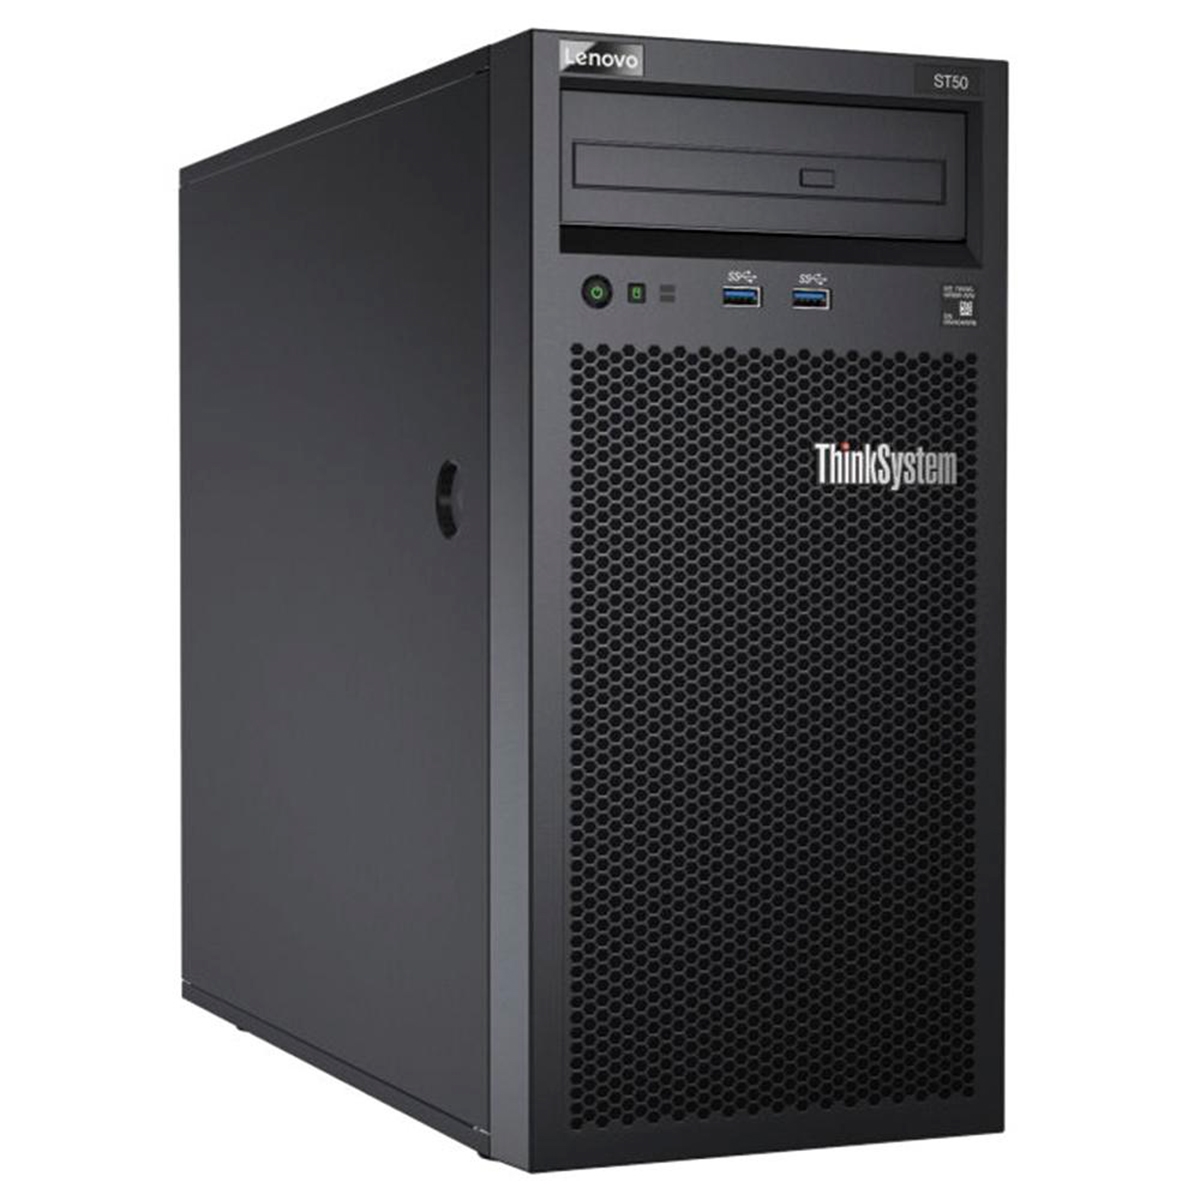 Servidor Lenovo ThinkSystem ST50 - Intel Xeon E-2104G, 8GB, HD 1TB, DVD, USB 3.0, FreeDos - 7Y48A00LBR